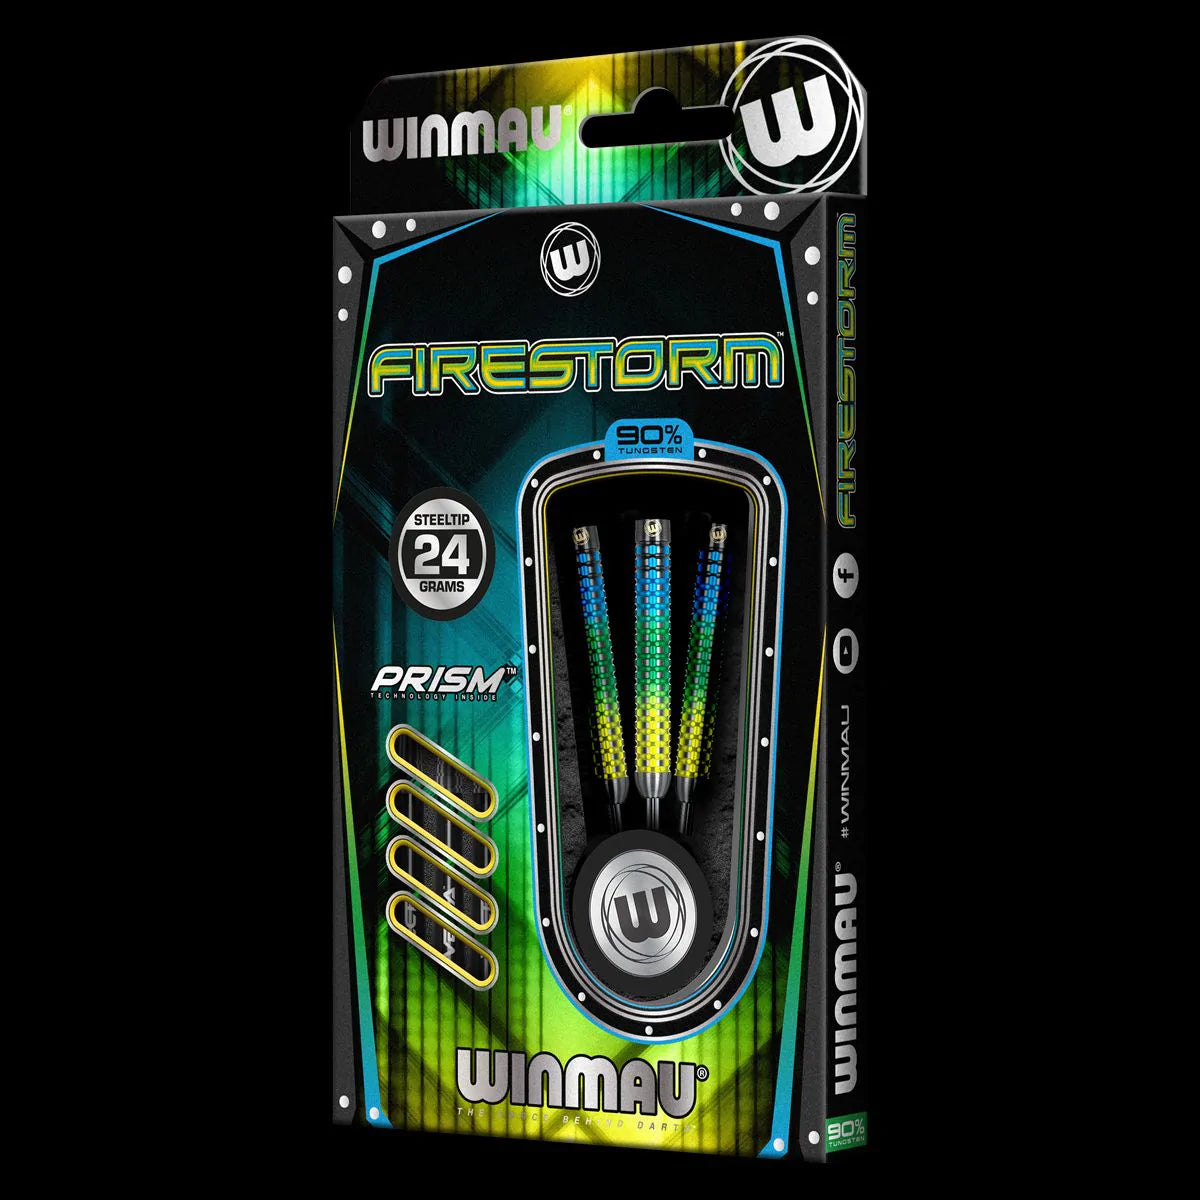 WINMAU - Firestorm Darts - 90% Tungsten - 22g